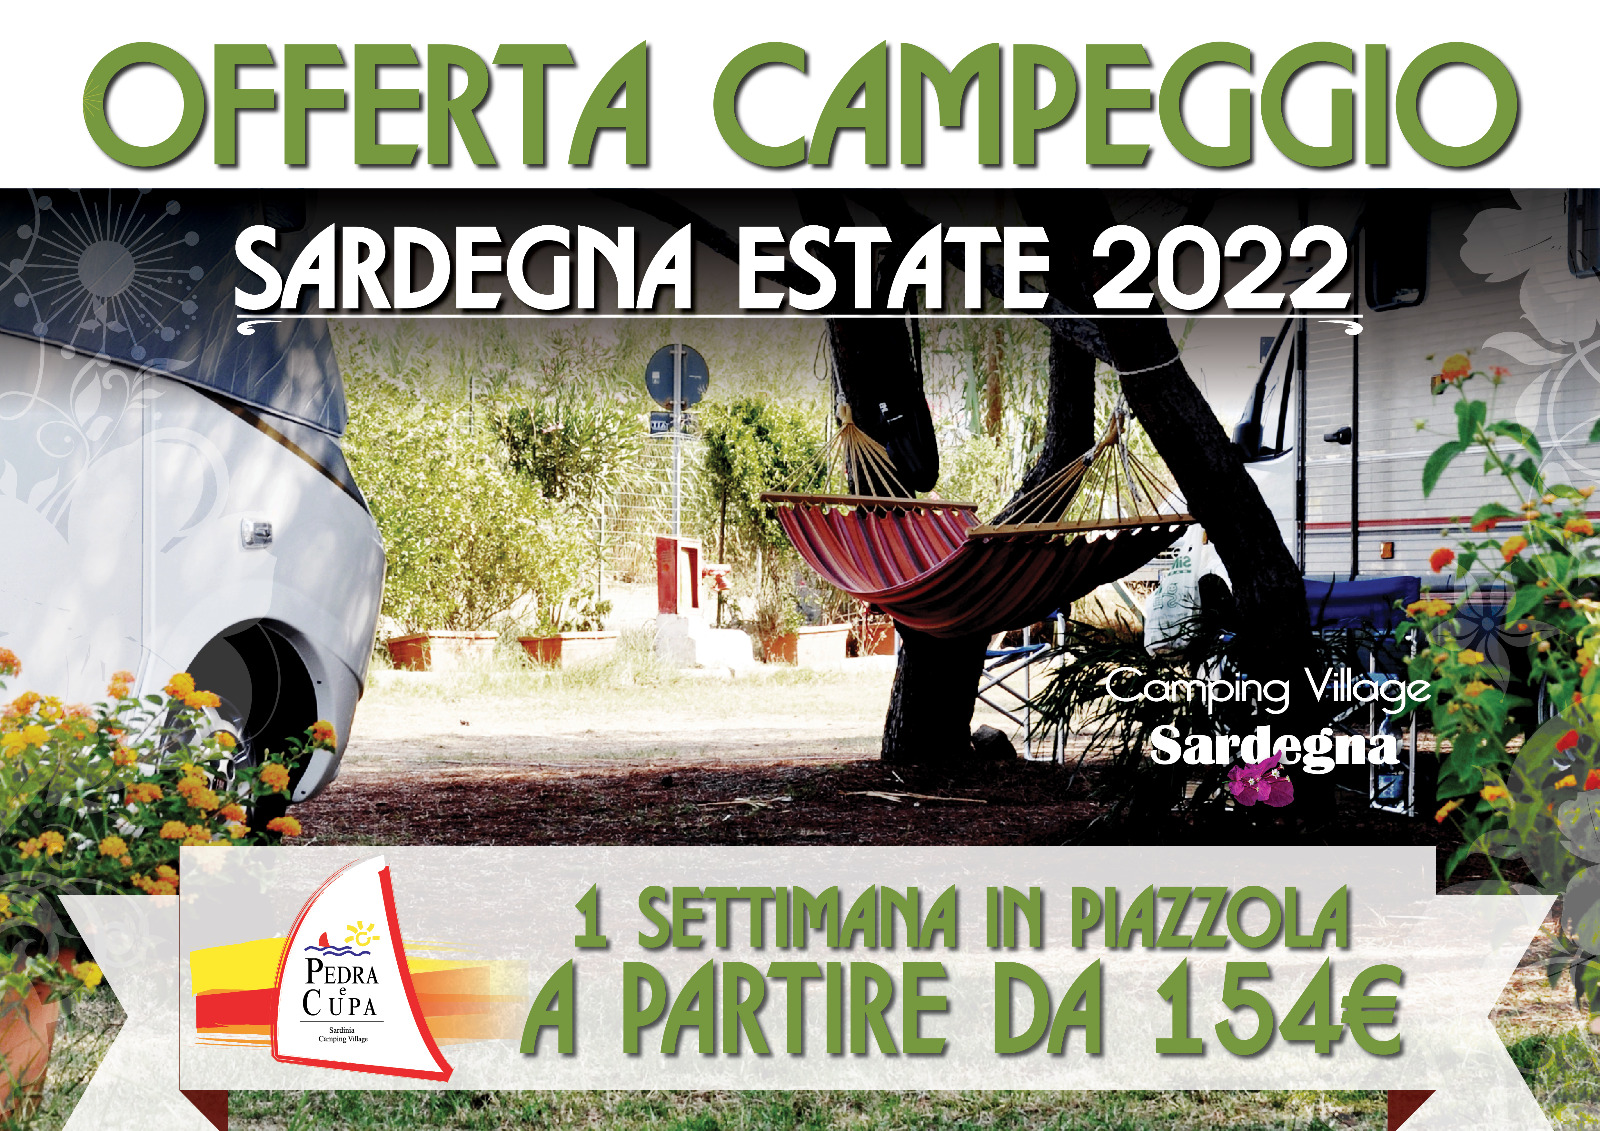 Offerta Campeggio Summer 2022